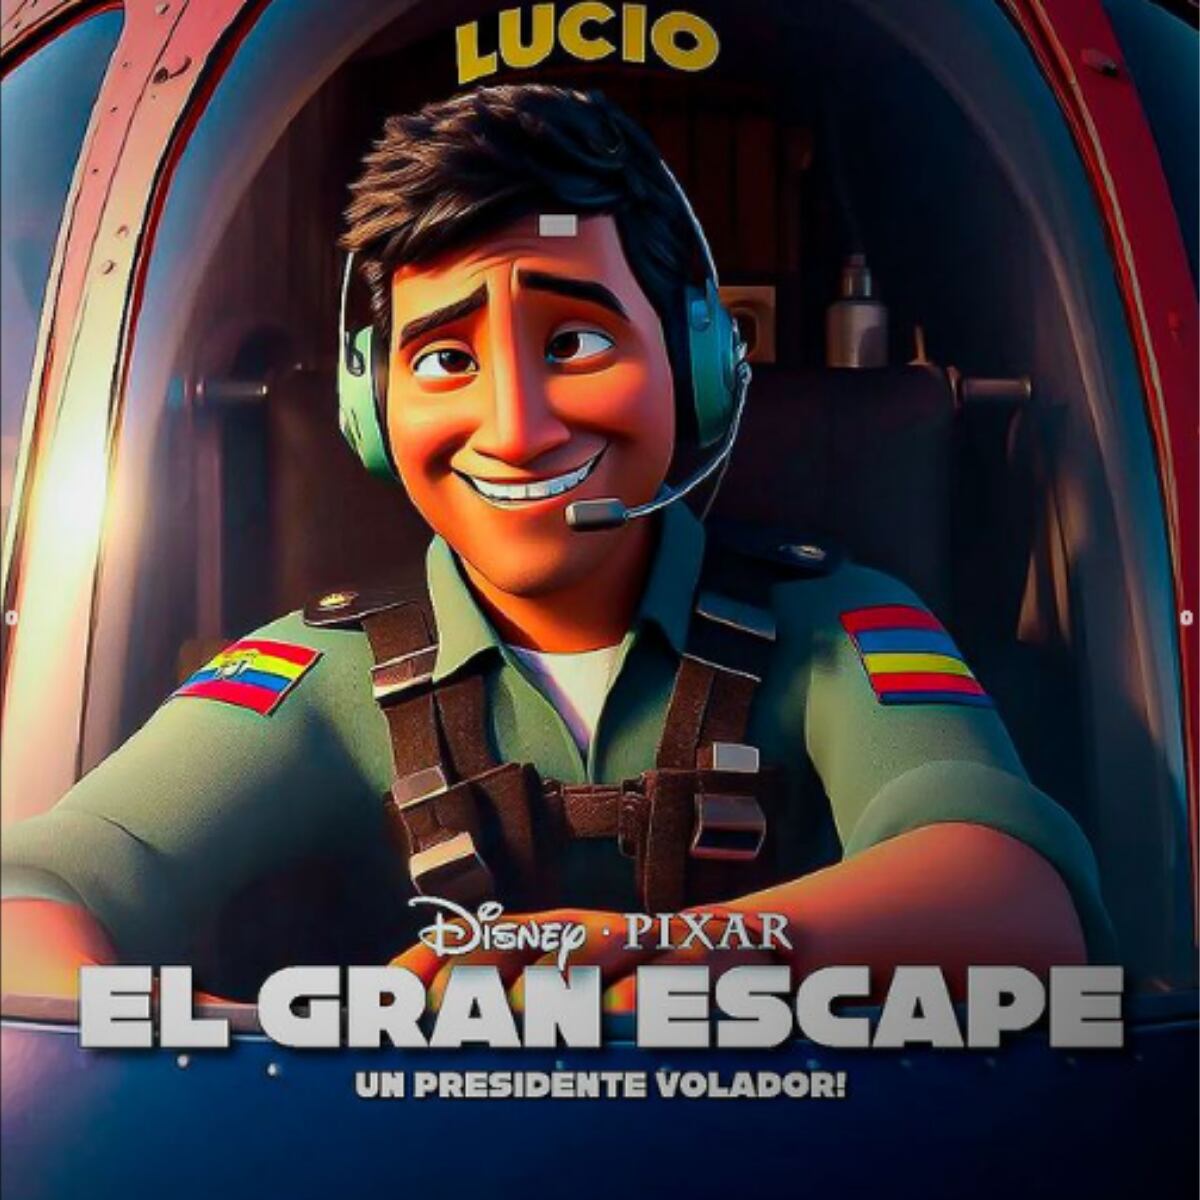 El expresidente ecuatoriano Lucio Gutiérrez como un personaje de Pixar en el falso afiche que reimagina su caída en el 2006.